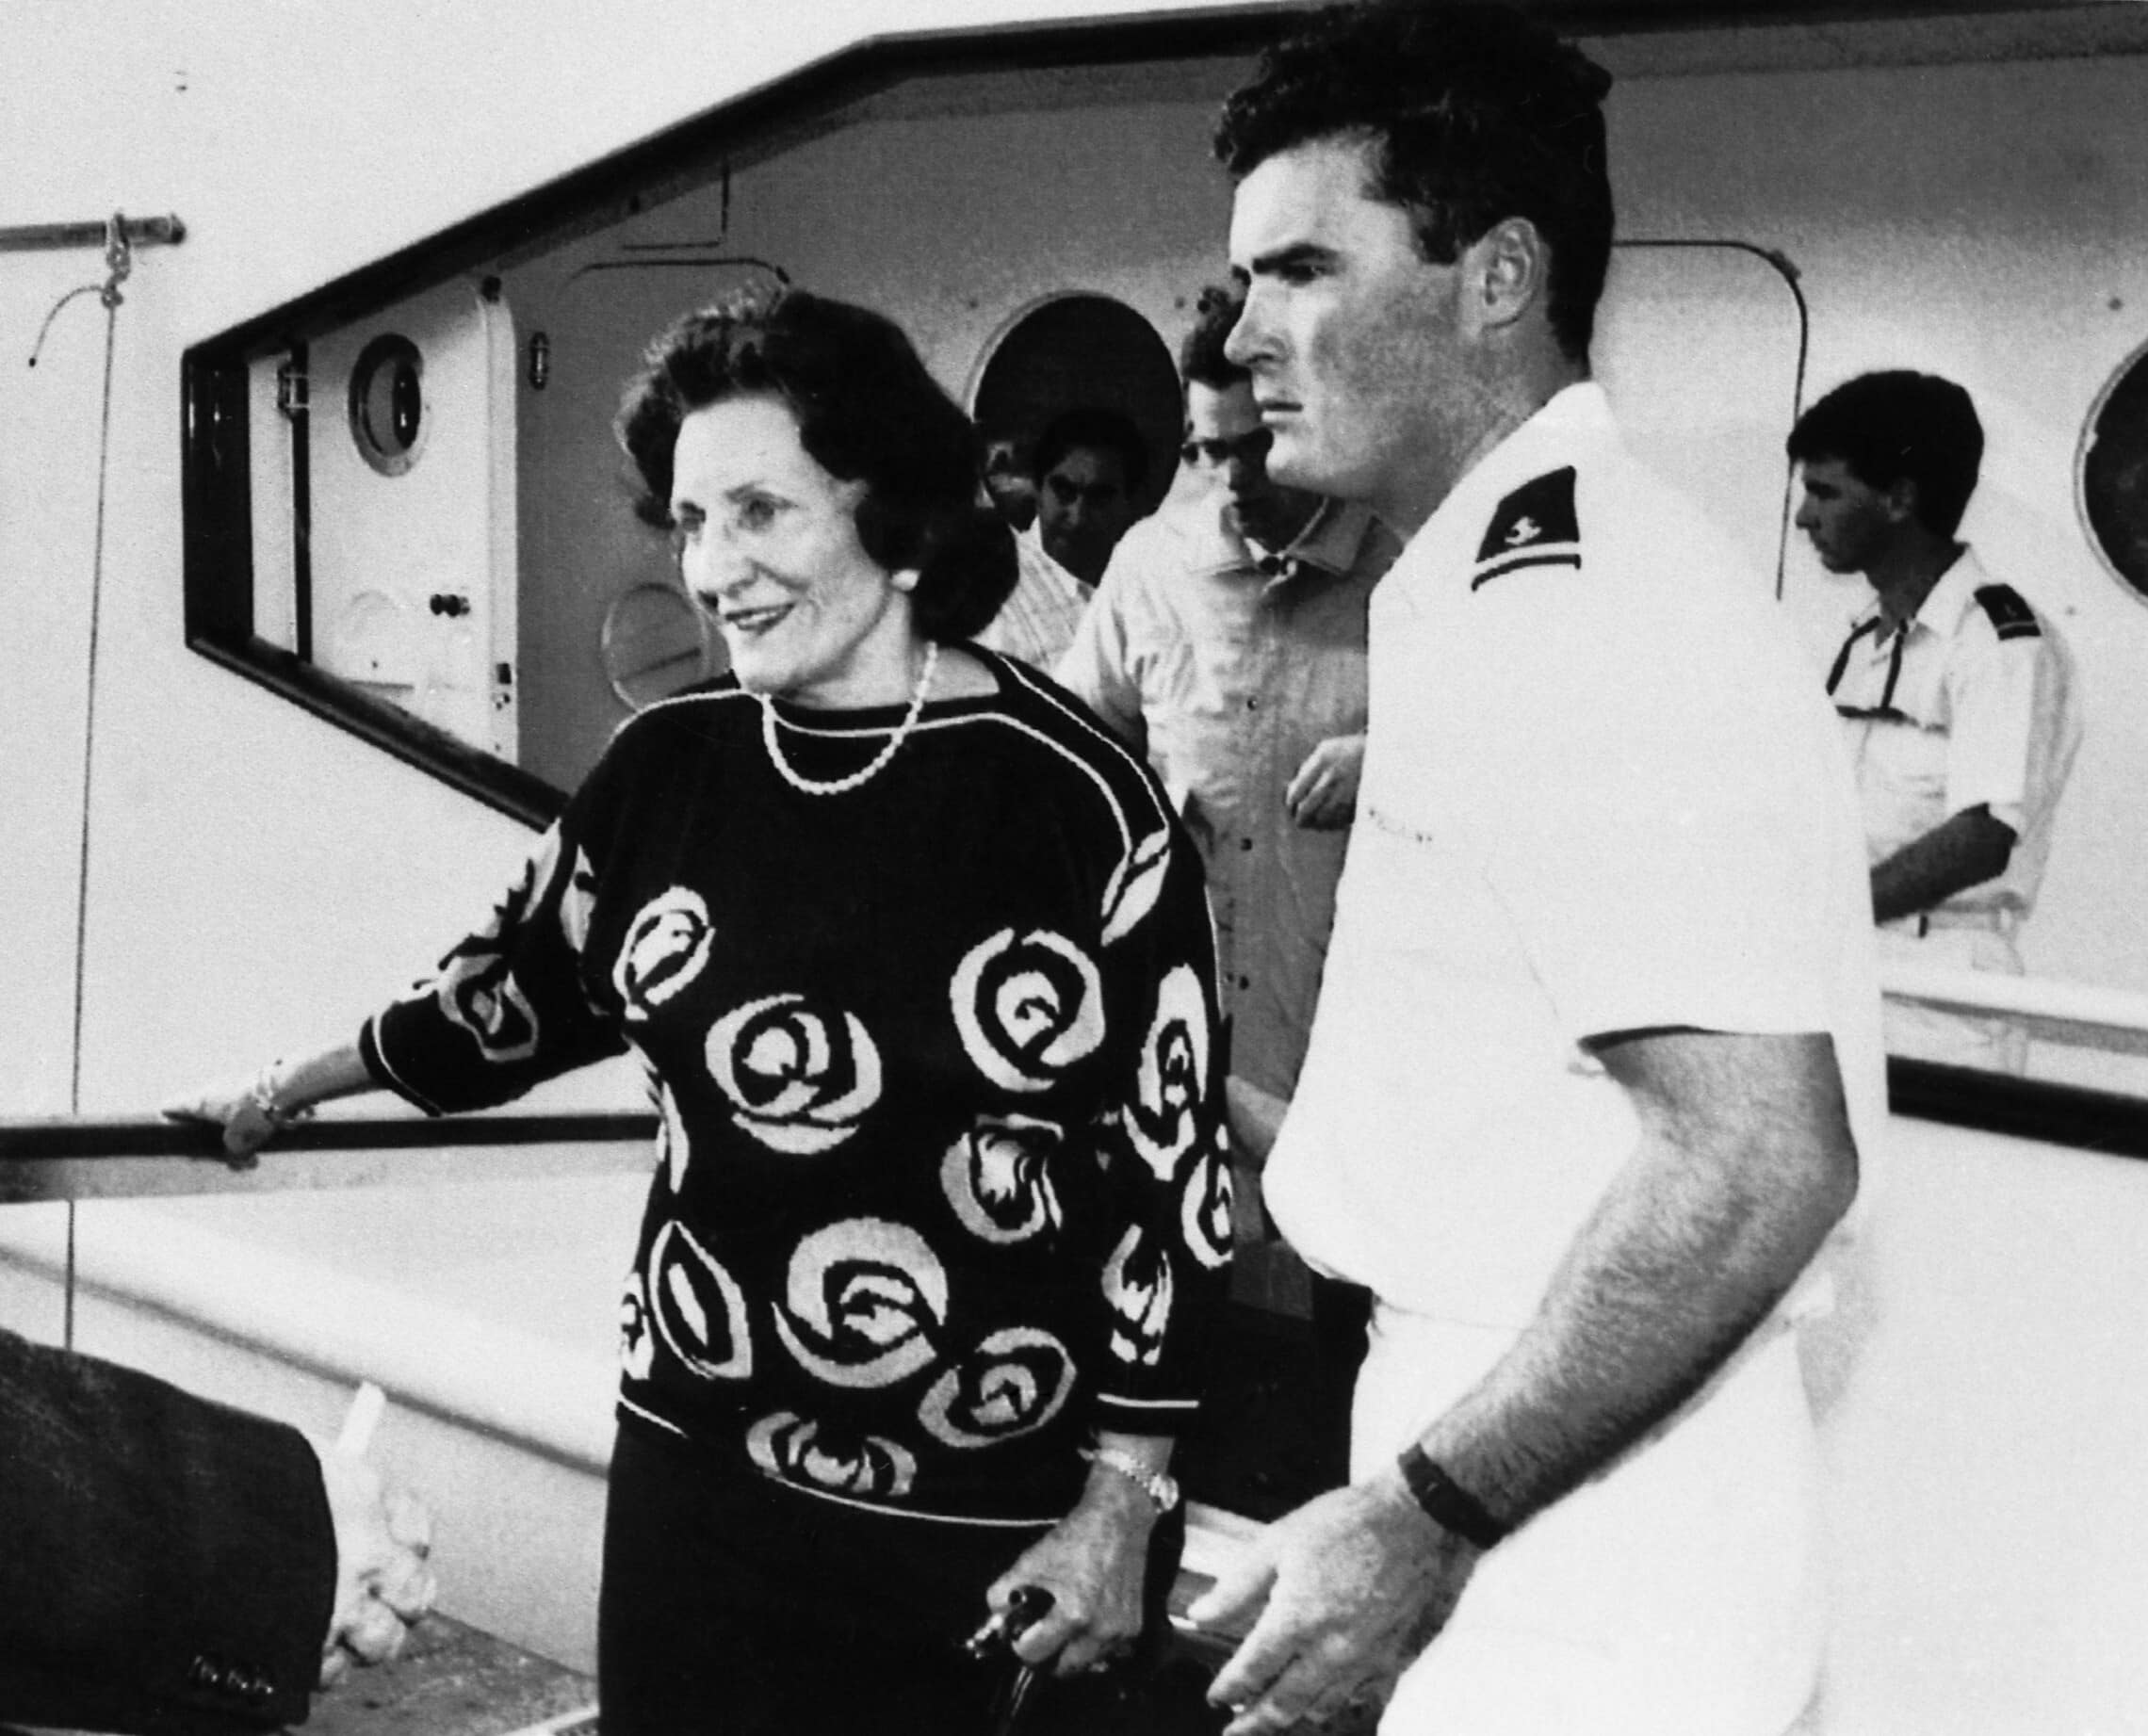 אליזבת מקסוול, אלמנתו של רוברט מקסוול, עוזבת את היאכטה &quot;ליידי גיליין&quot; בדרכה להעביר את גופתו של רוברט לשדה התעופה, ב-7 בנובמבר 1991 (צילום: Dominique Mollard/AP Photo)